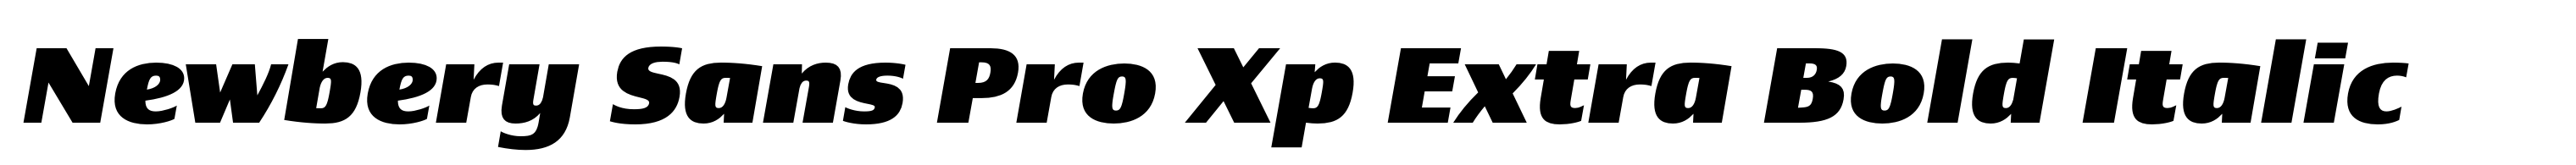 Newbery Sans Pro Xp Extra Bold Italic